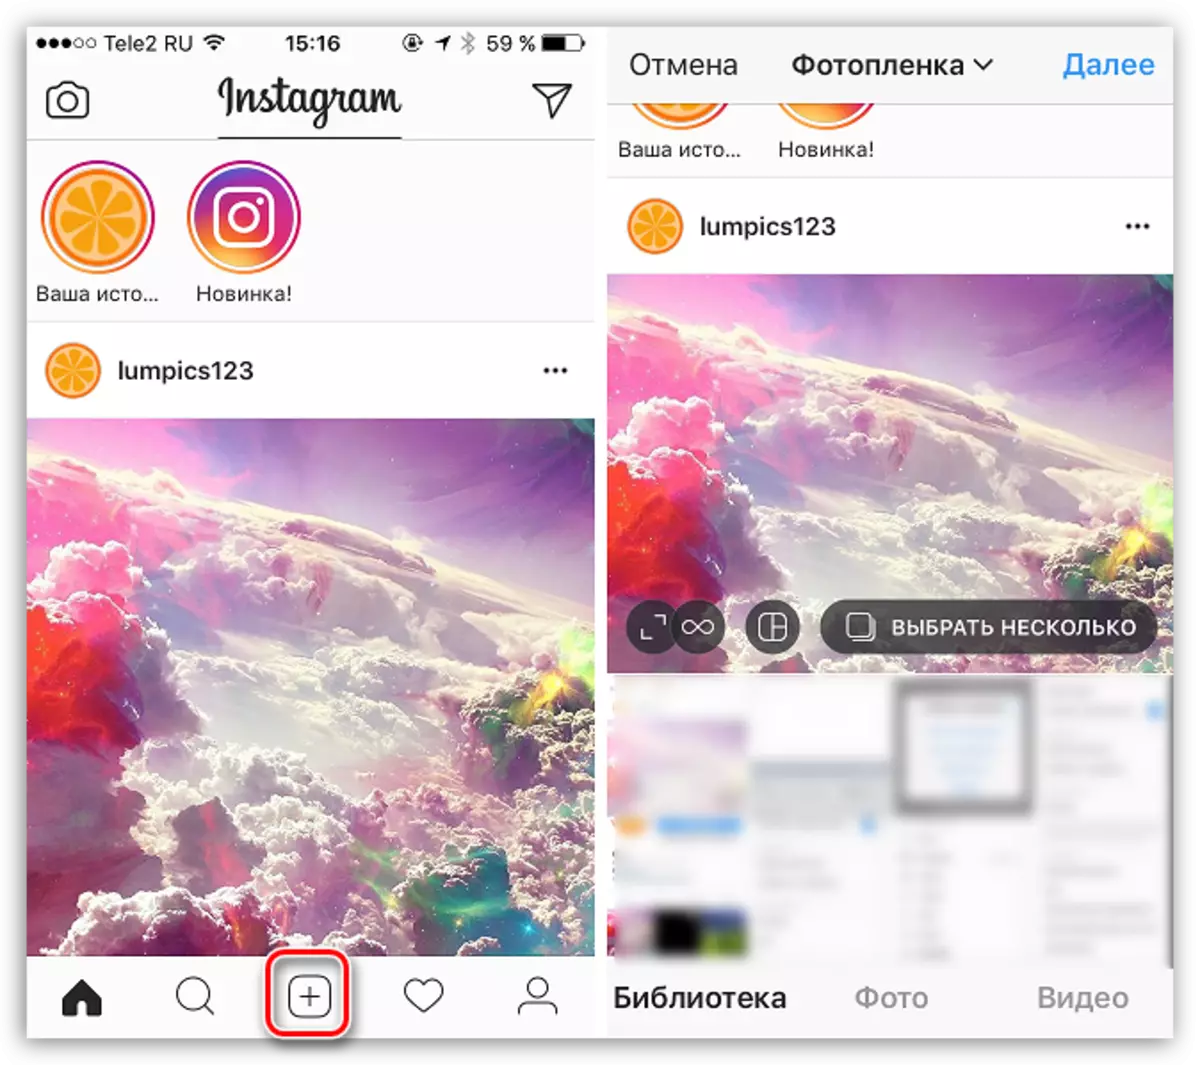 Odabir fotografije ili videozapisa za objavljivanje u Instagramu